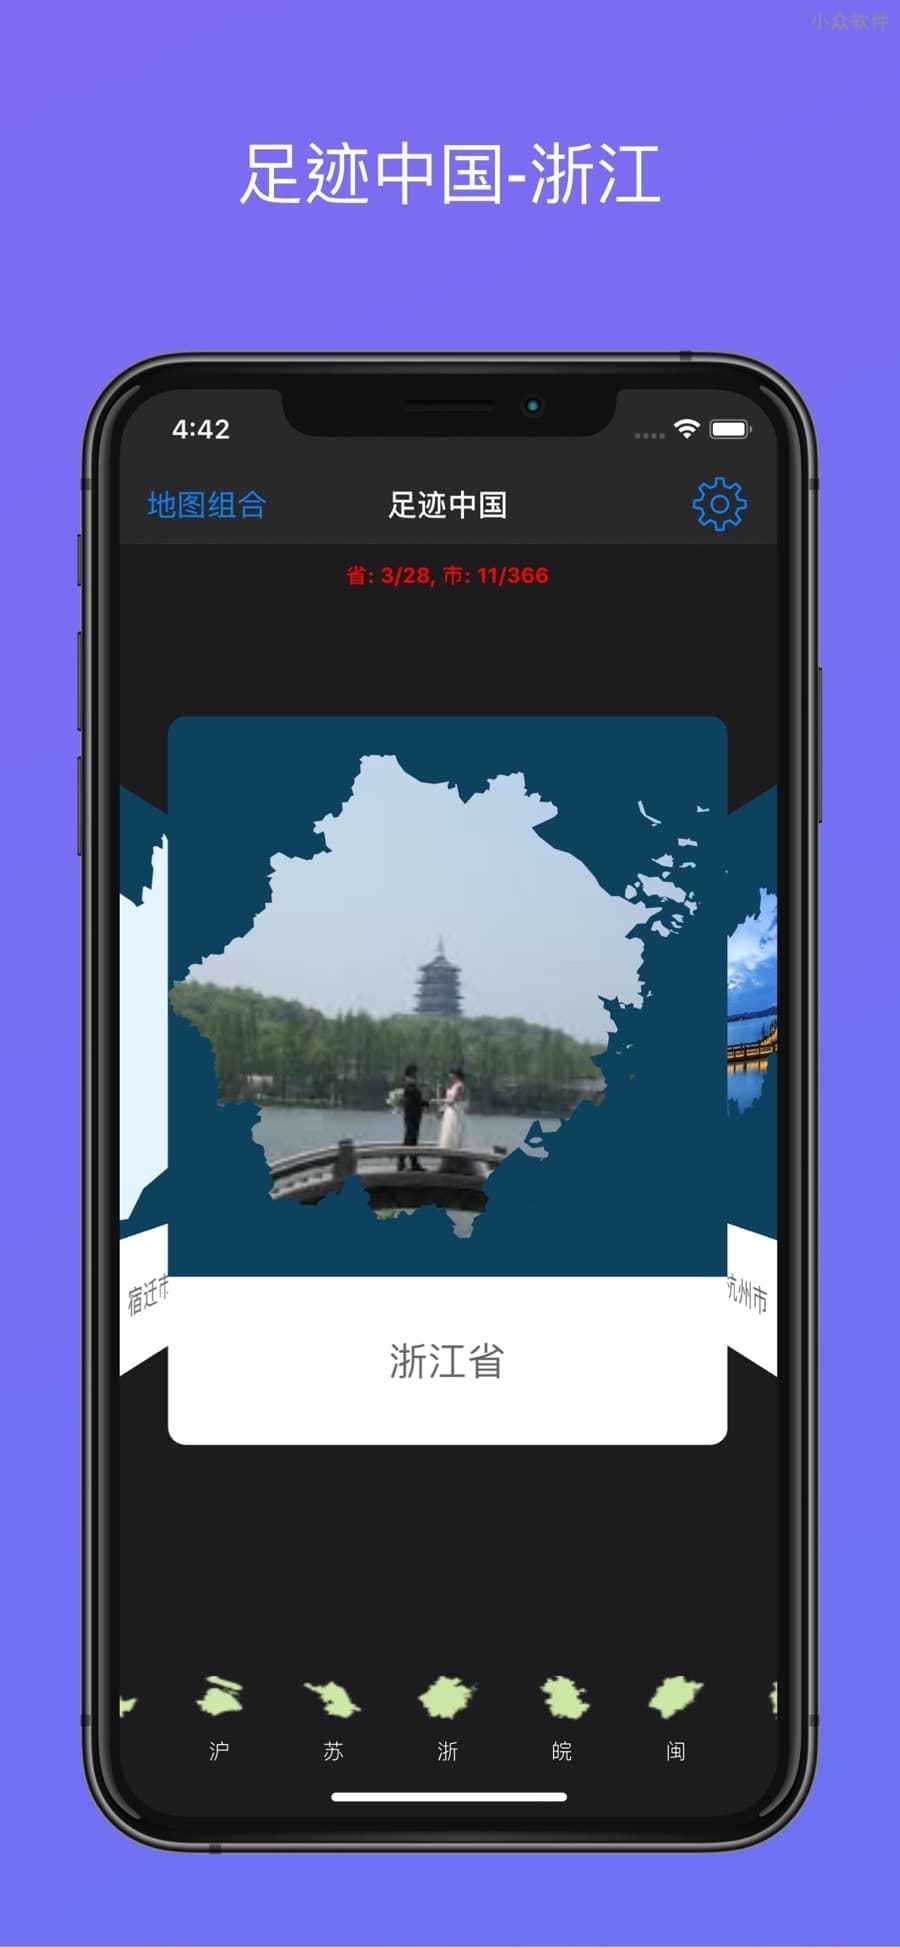 足迹中国 - 用照片填充中国地图轮廓，生成旅行地图[iPhone] 2